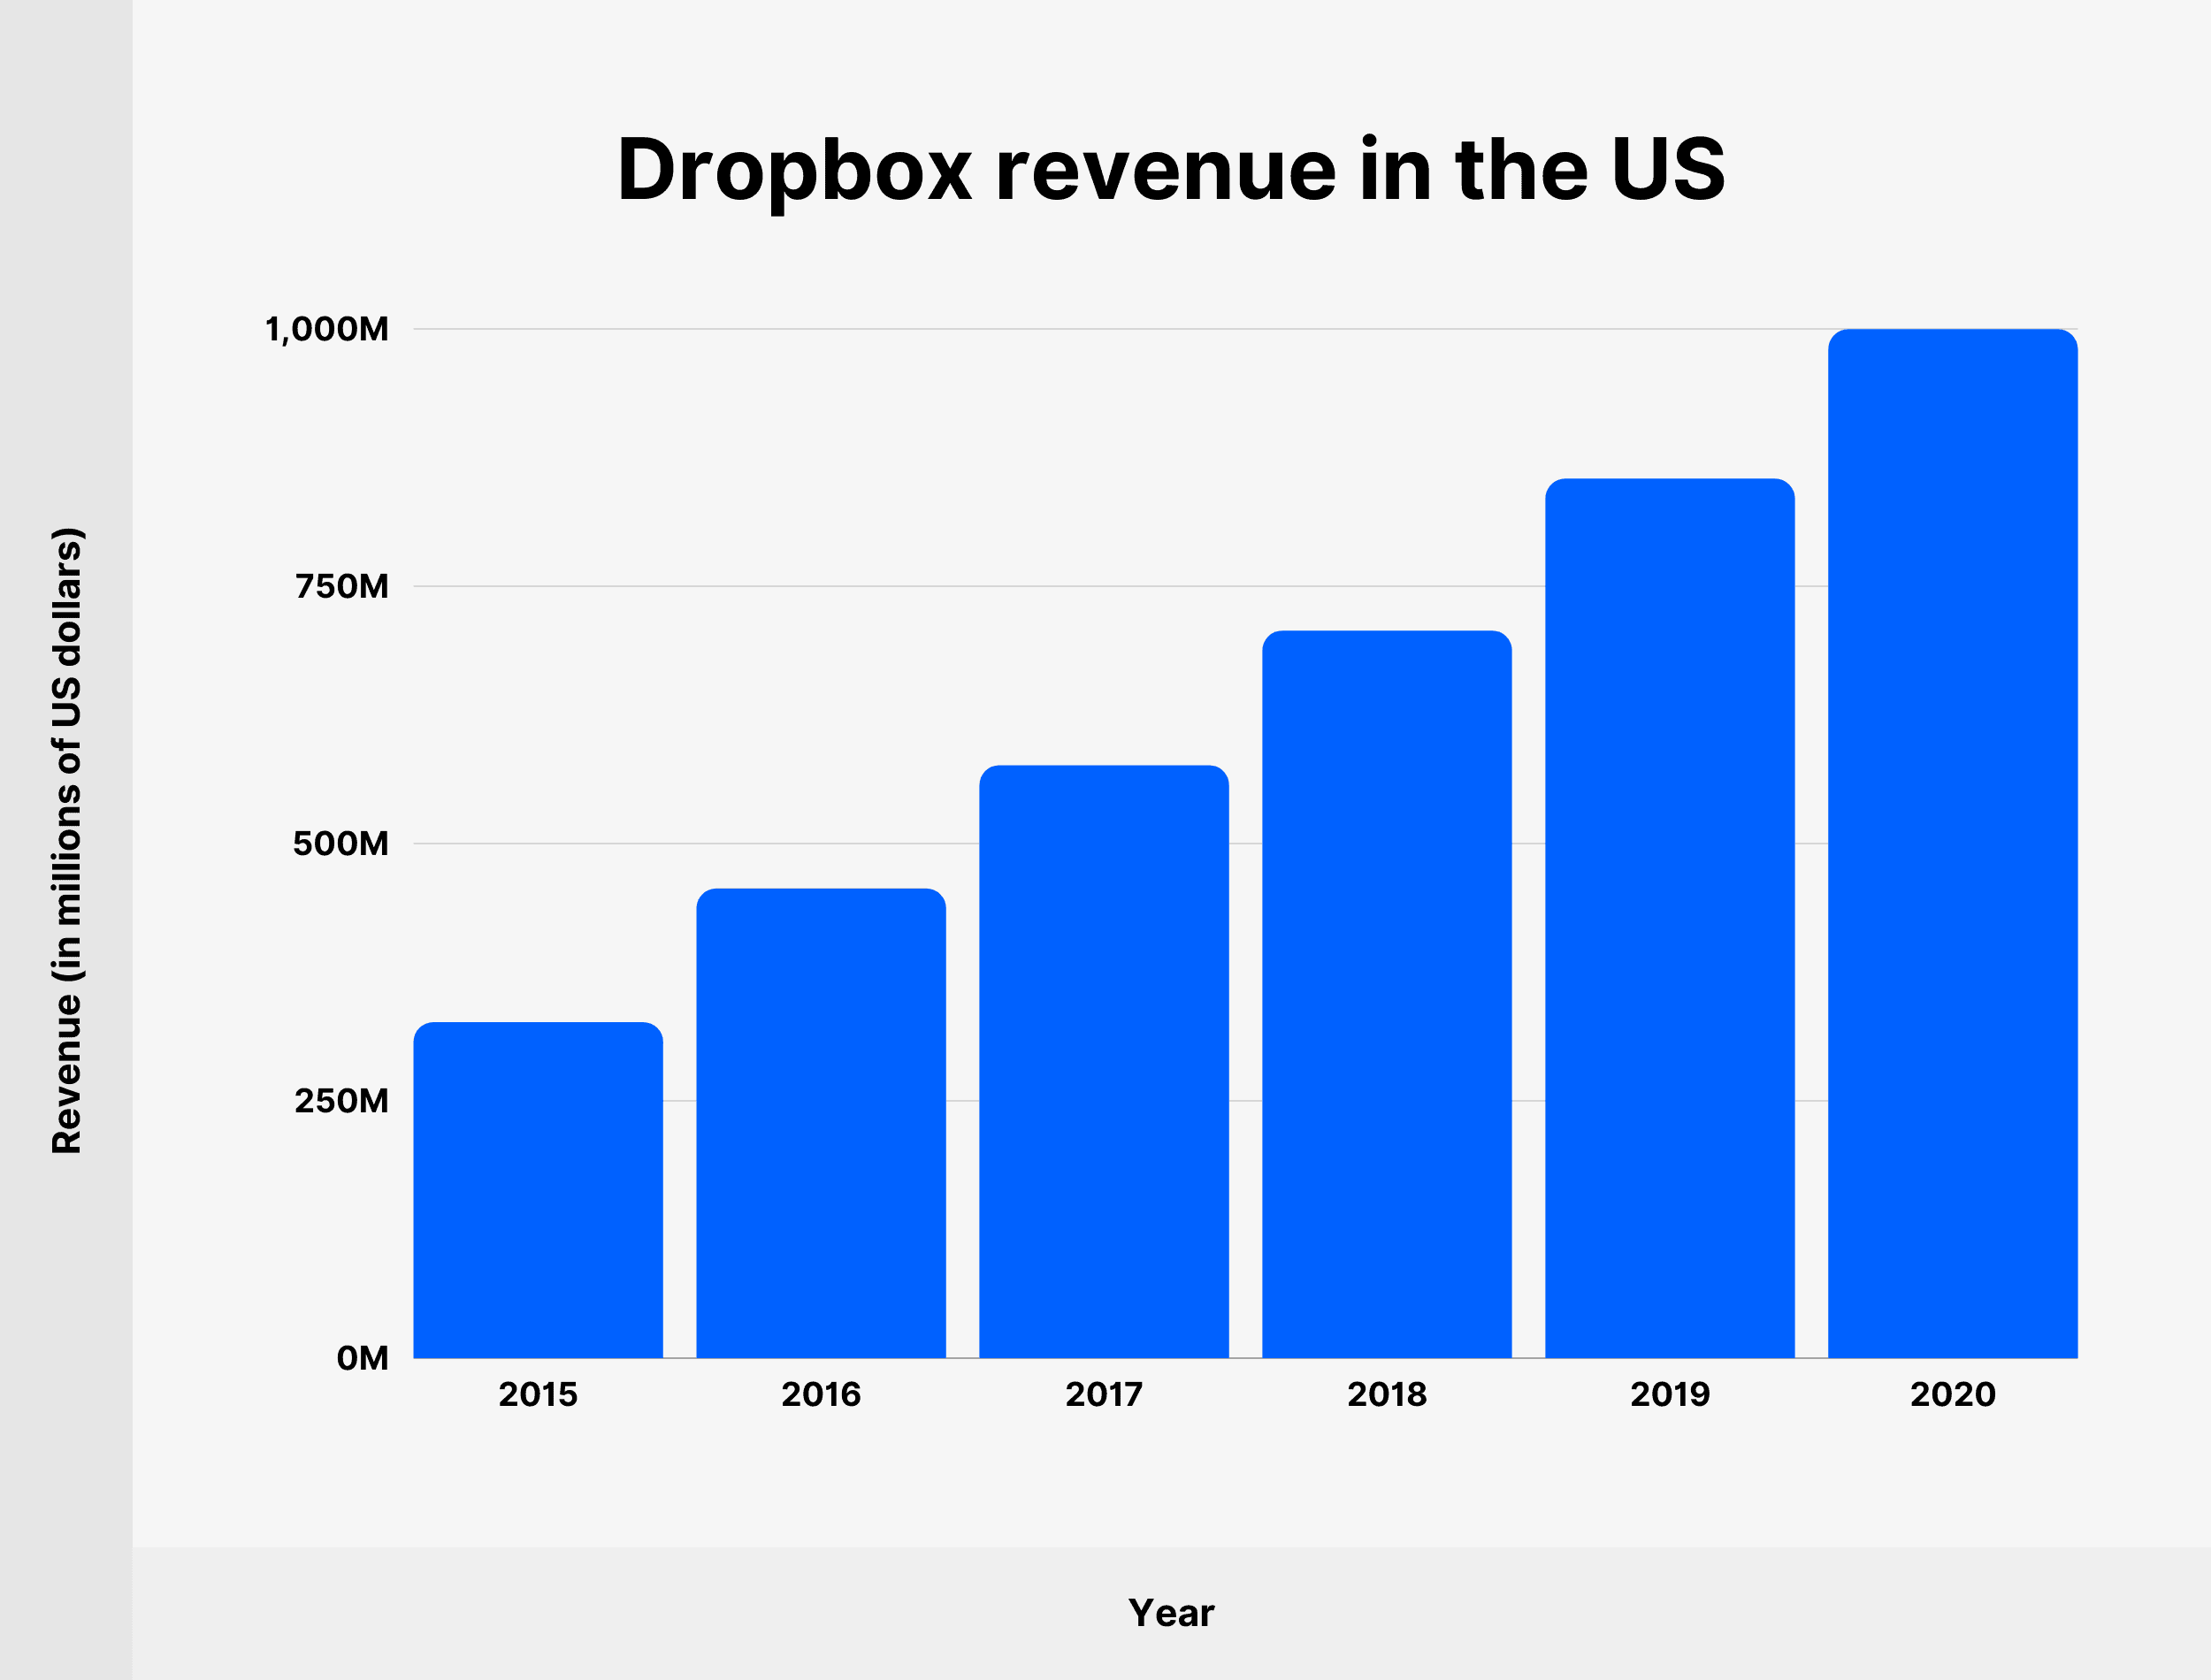 Dropbox revenue in the US